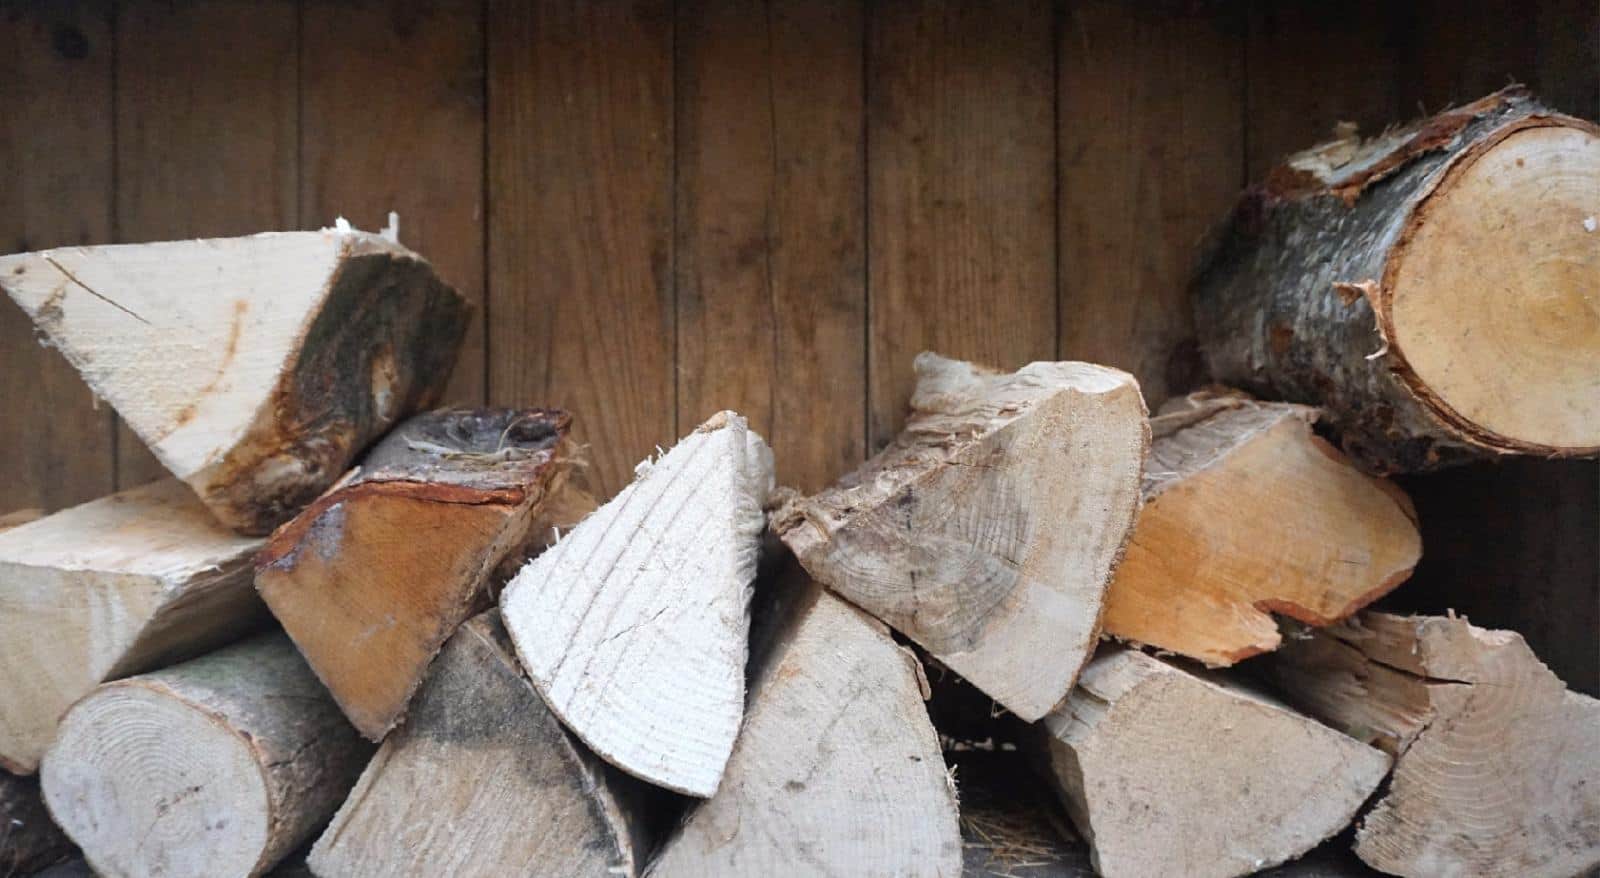 Logs provided for the Jakuzi at Brompton Lakes